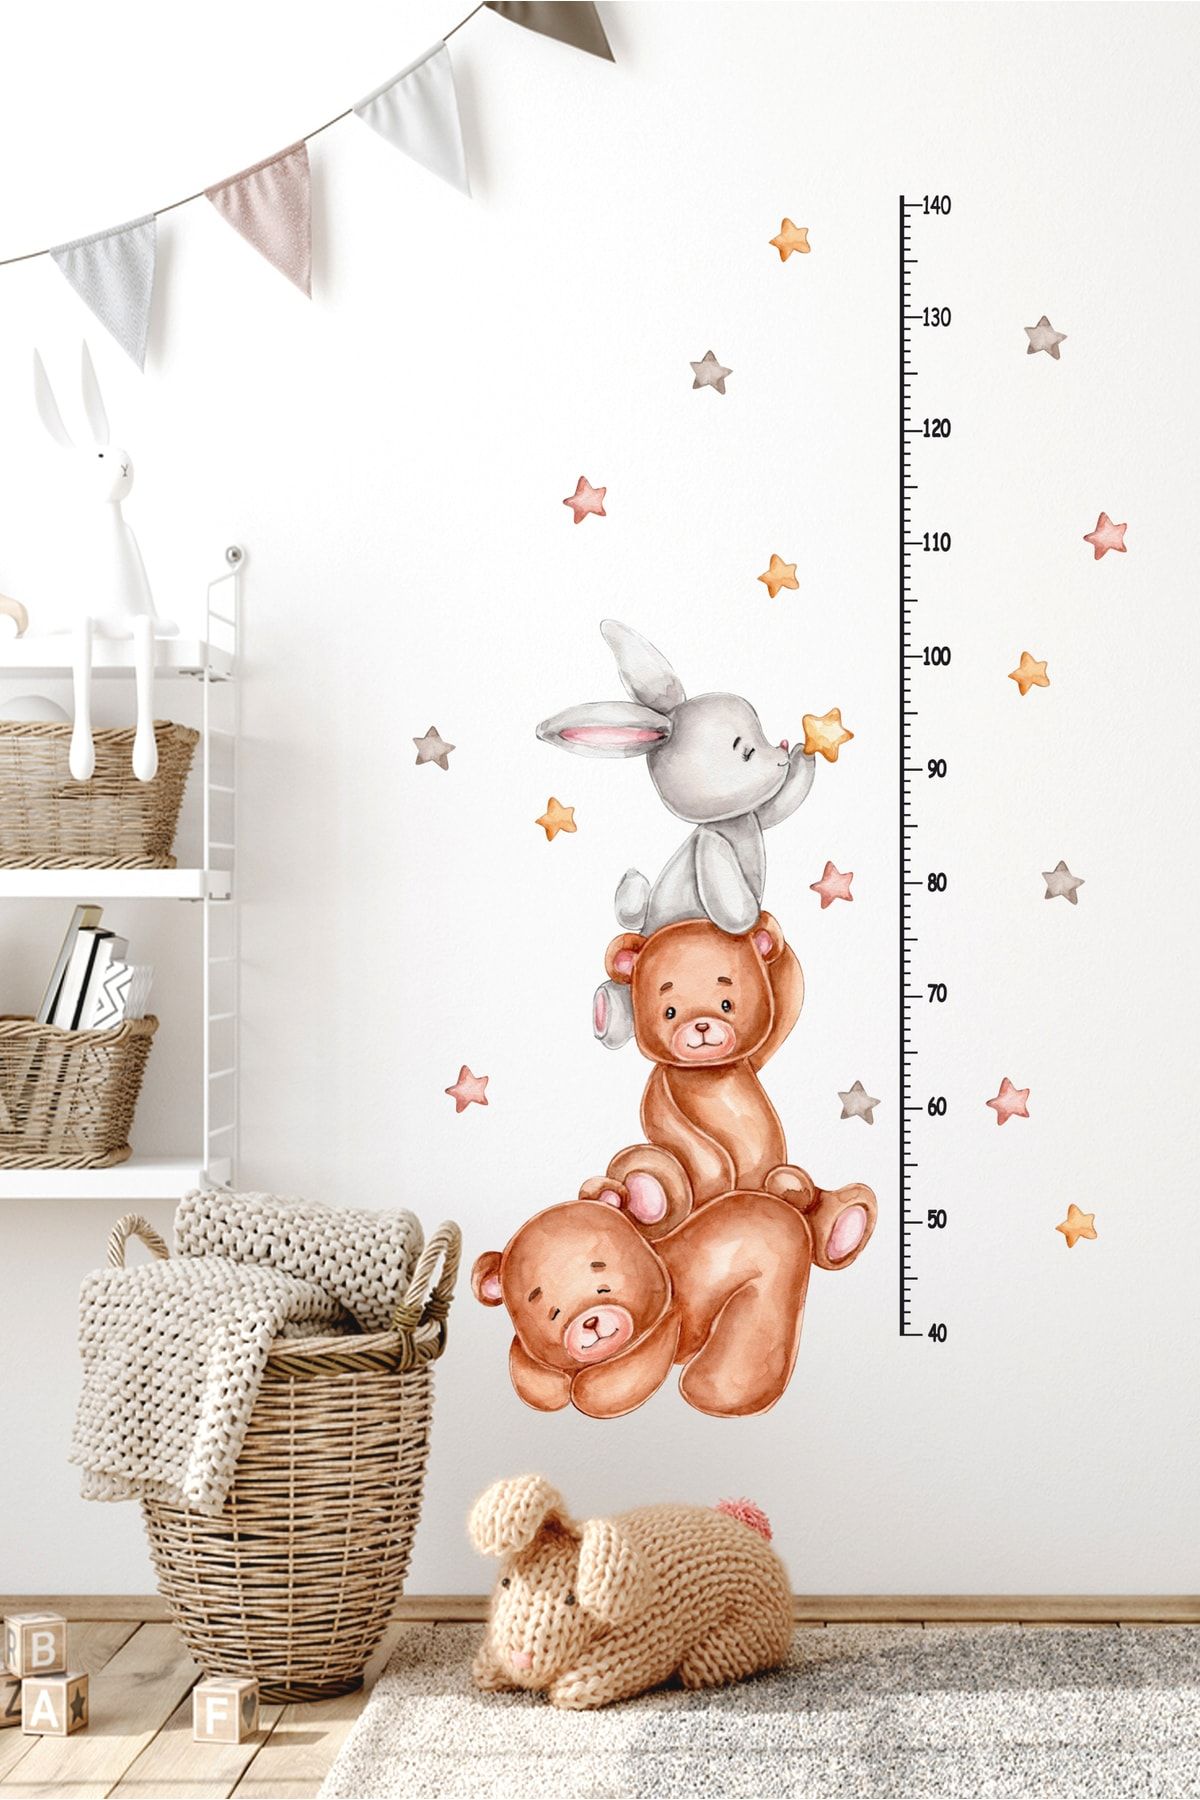 Sticker Sepetim Duvar Sticker - Sevimli Ayıcıklar, Tavşan Ve Yıldızlar Çocuk Odası Boy Ölçer Cetvel Duvar Dekoru